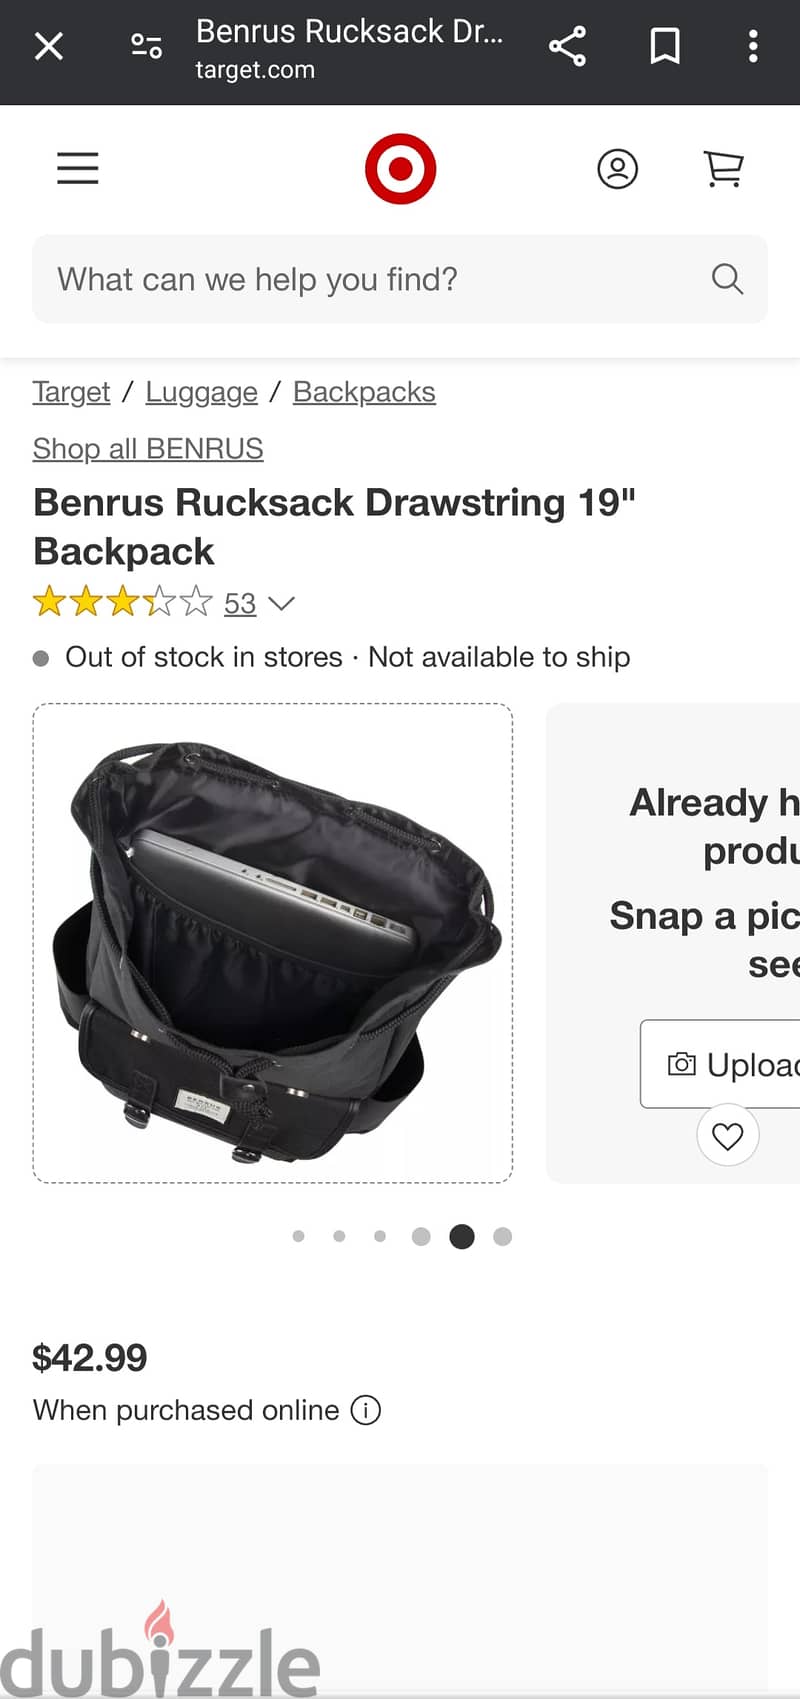 Benrus Rucksack Drawstring 19" Backpack 5